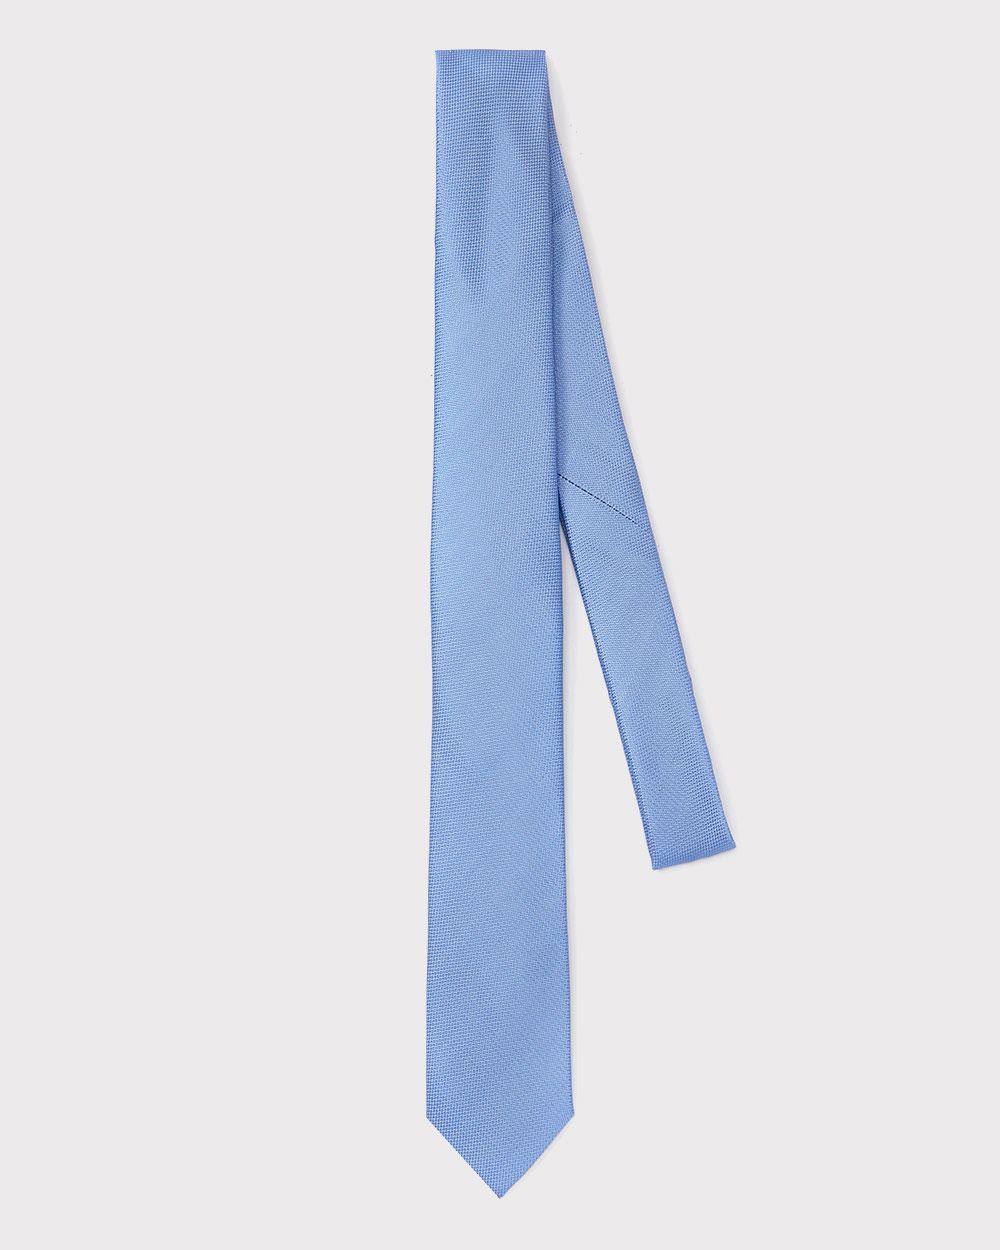 Regular light blue tie